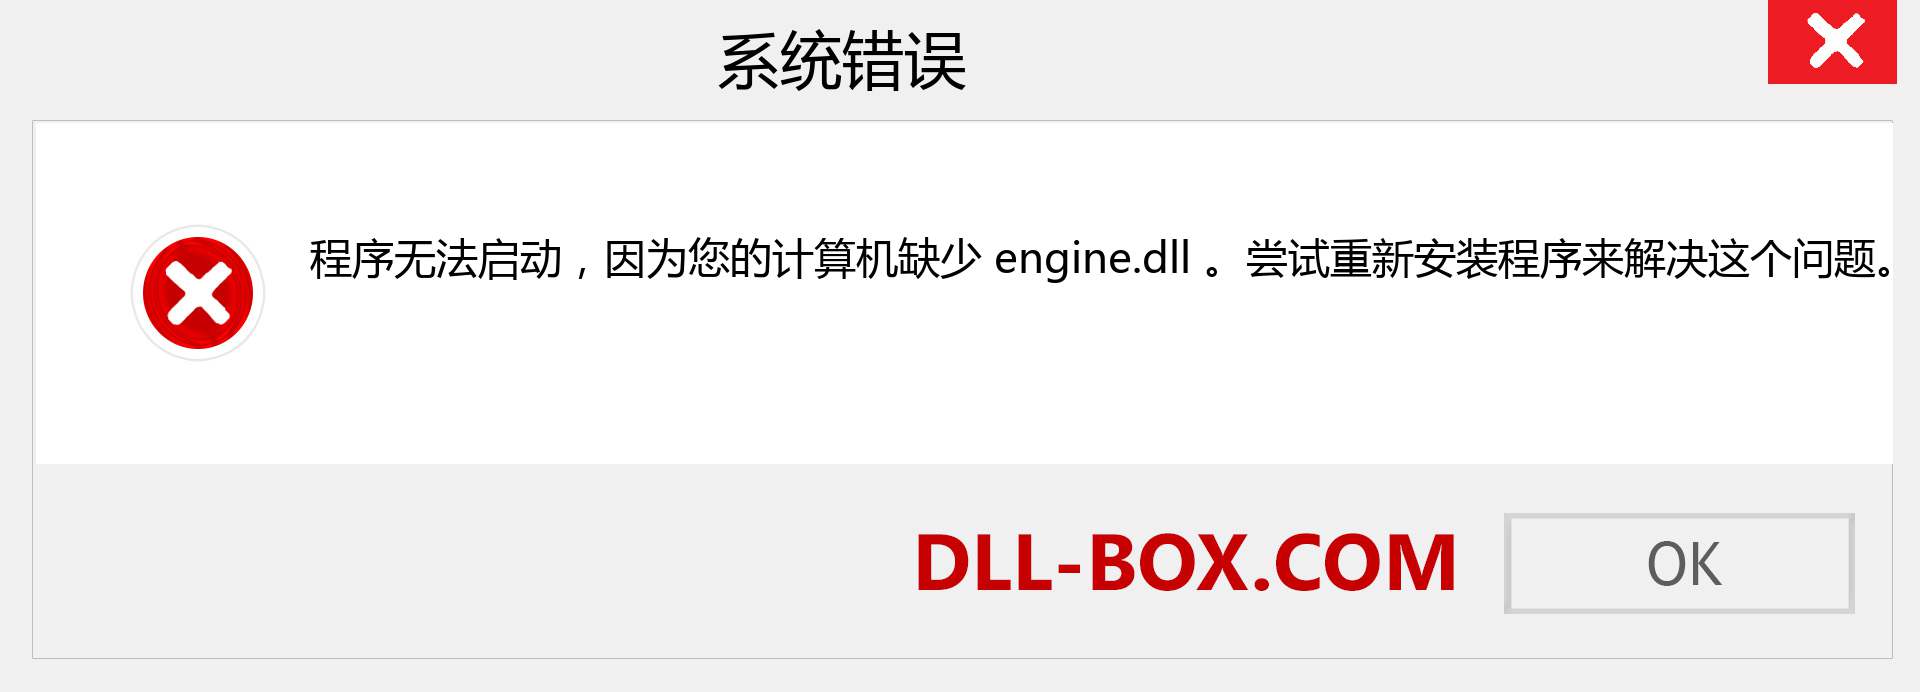 engine.dll 文件丢失？。 适用于 Windows 7、8、10 的下载 - 修复 Windows、照片、图像上的 engine dll 丢失错误